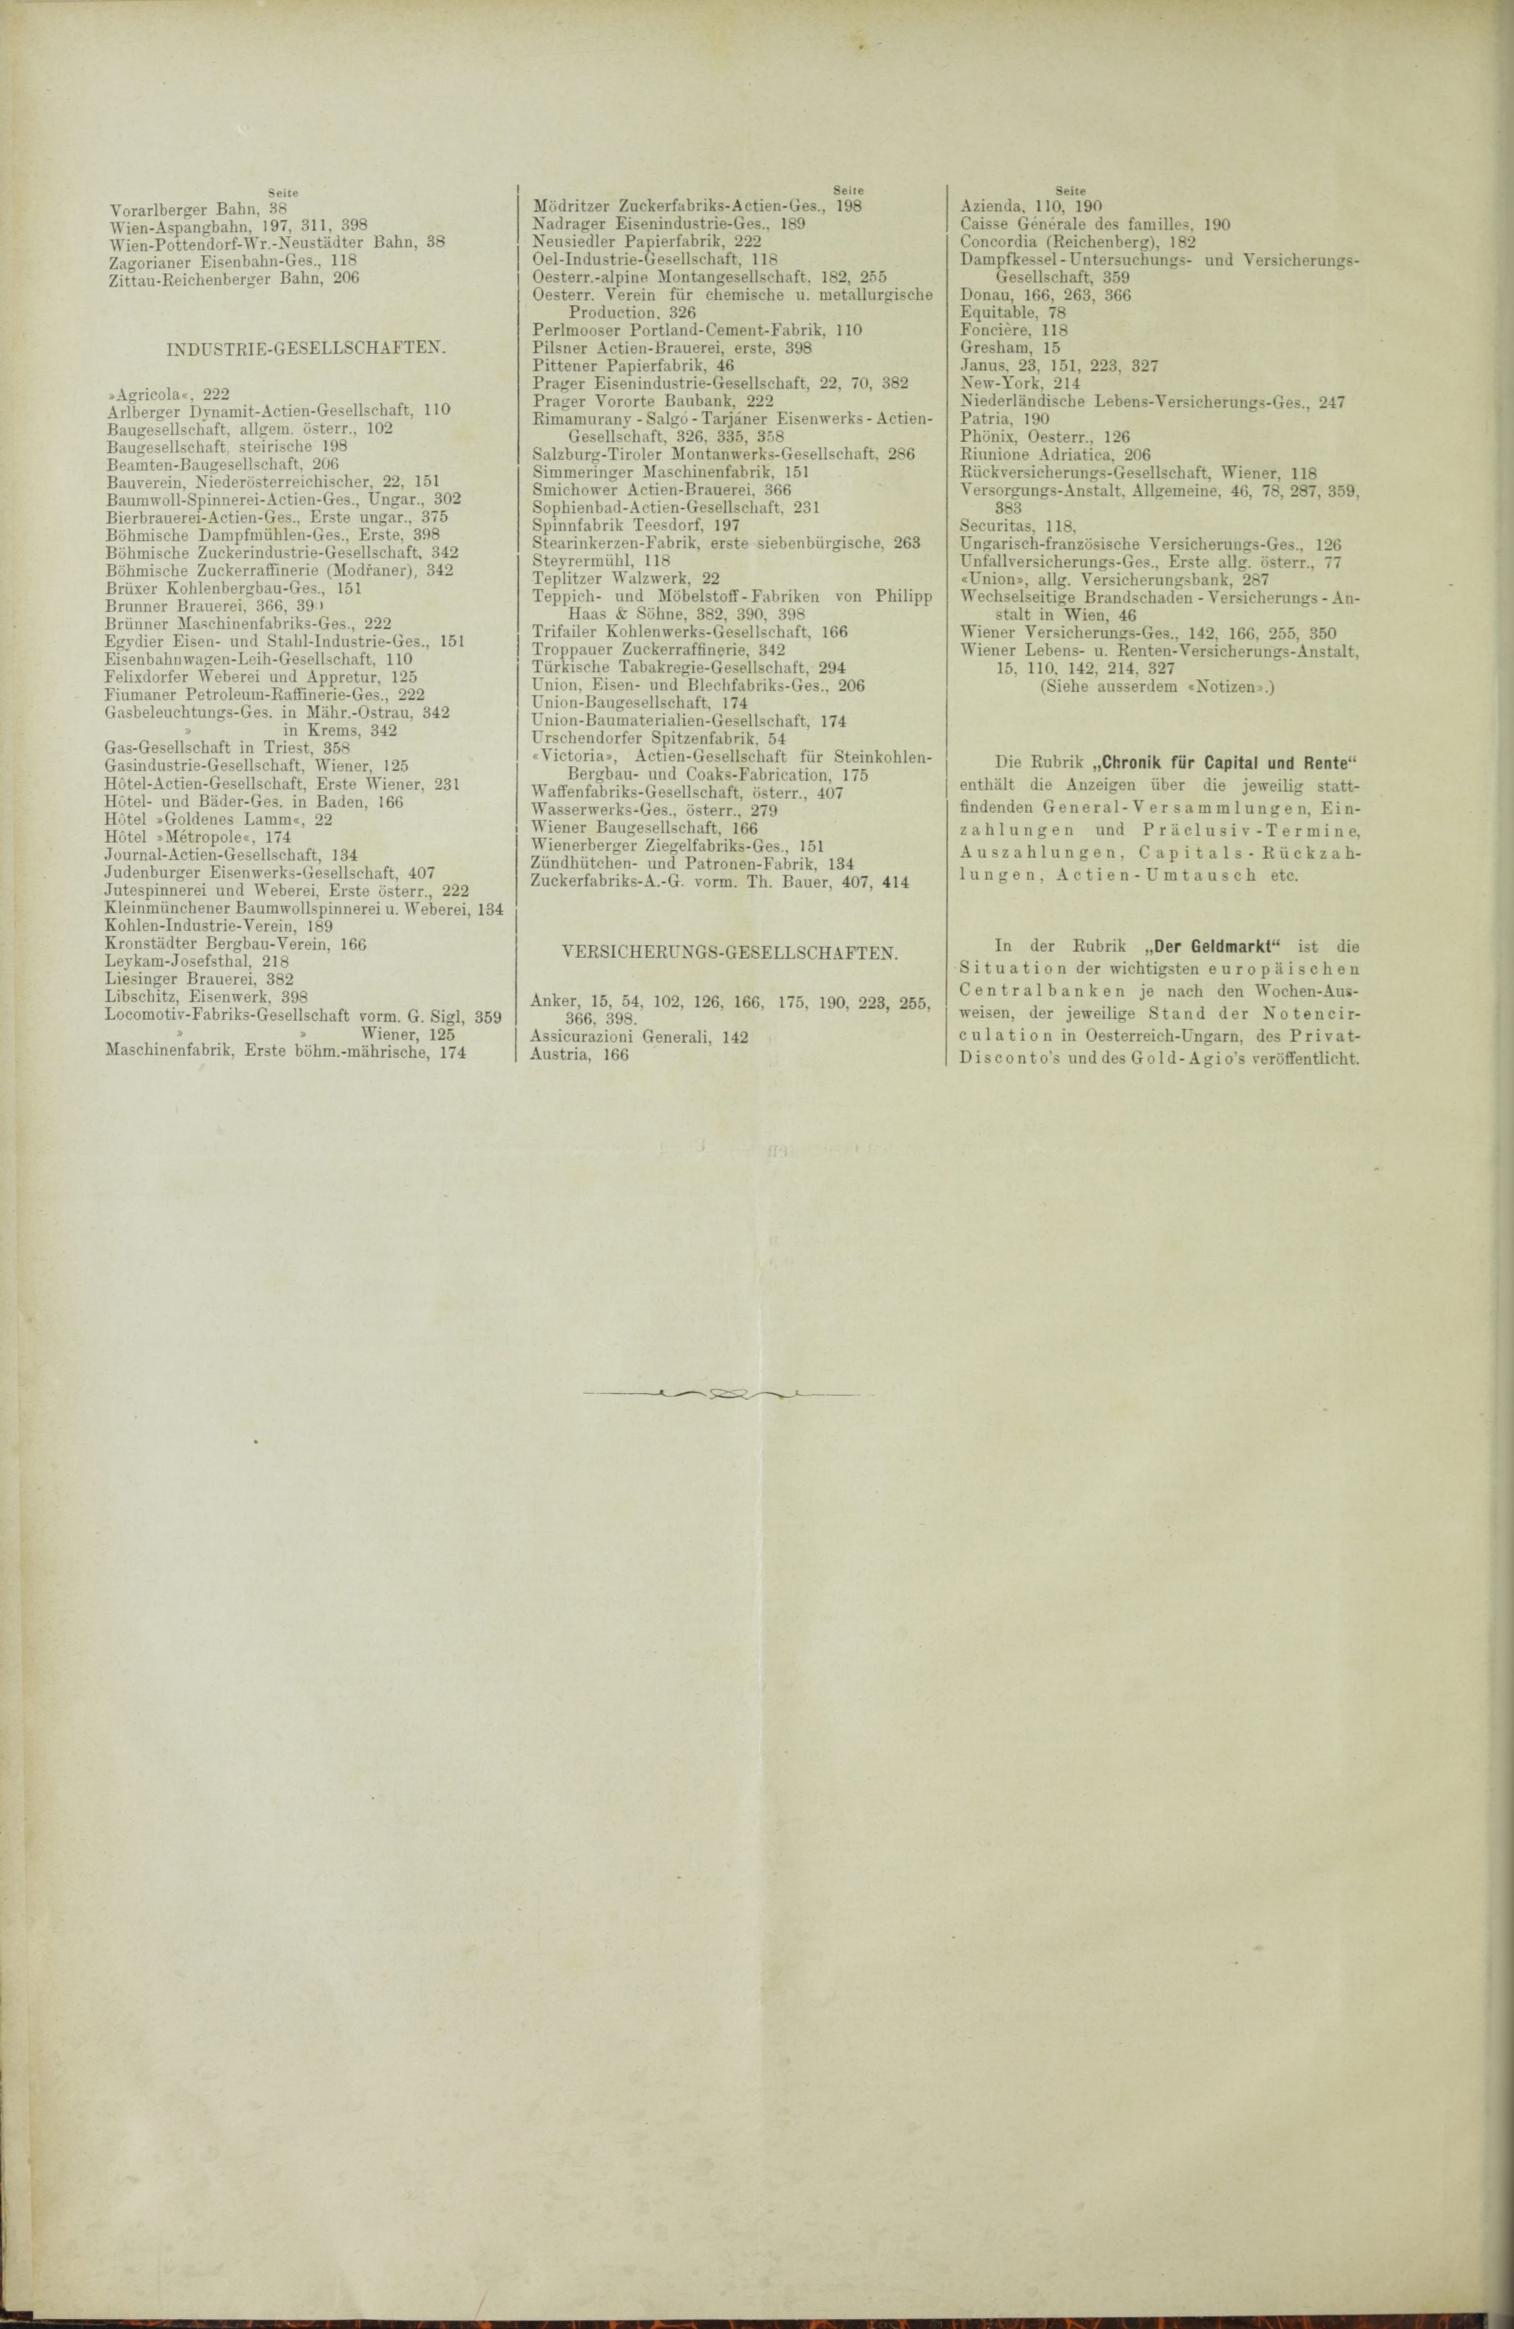 Der Tresor 06.05.1886 - Seite 22